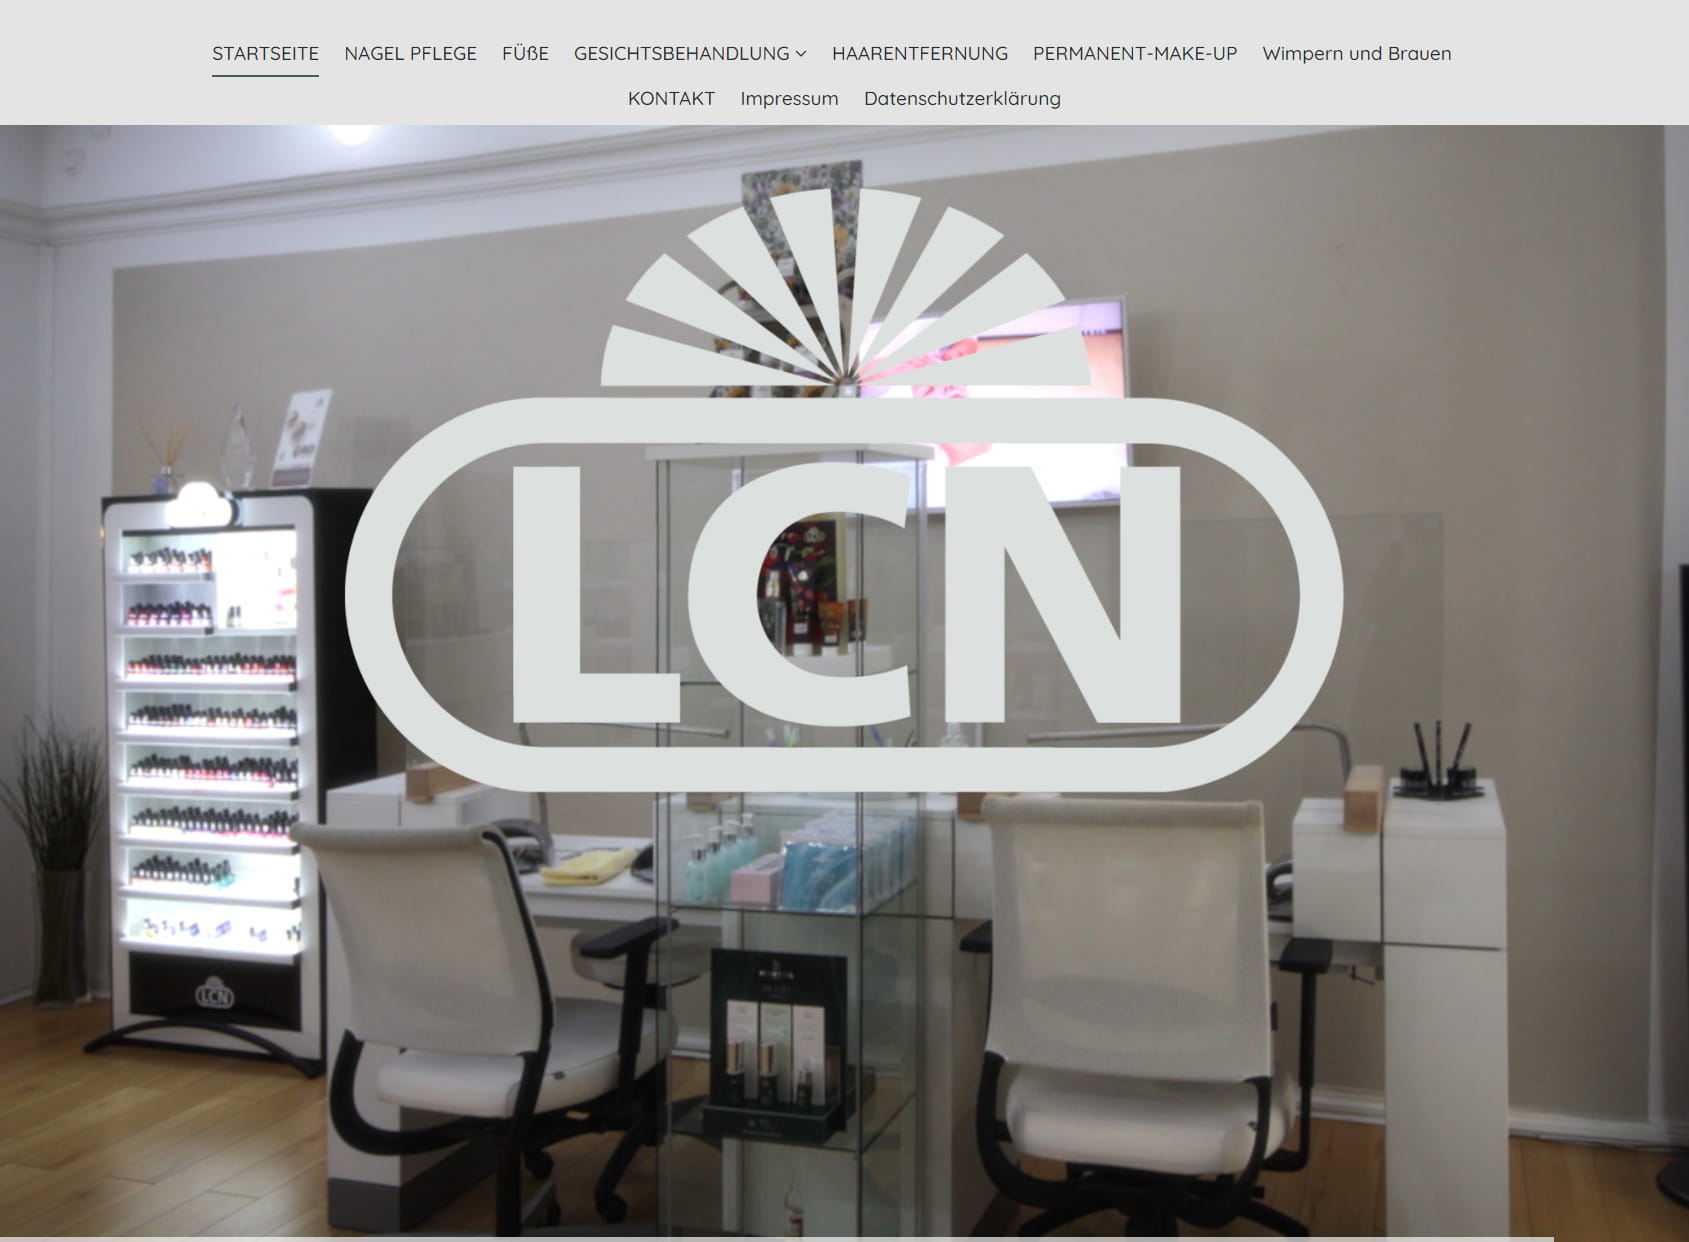 LCN Beauty Center Lübeck beauty salon